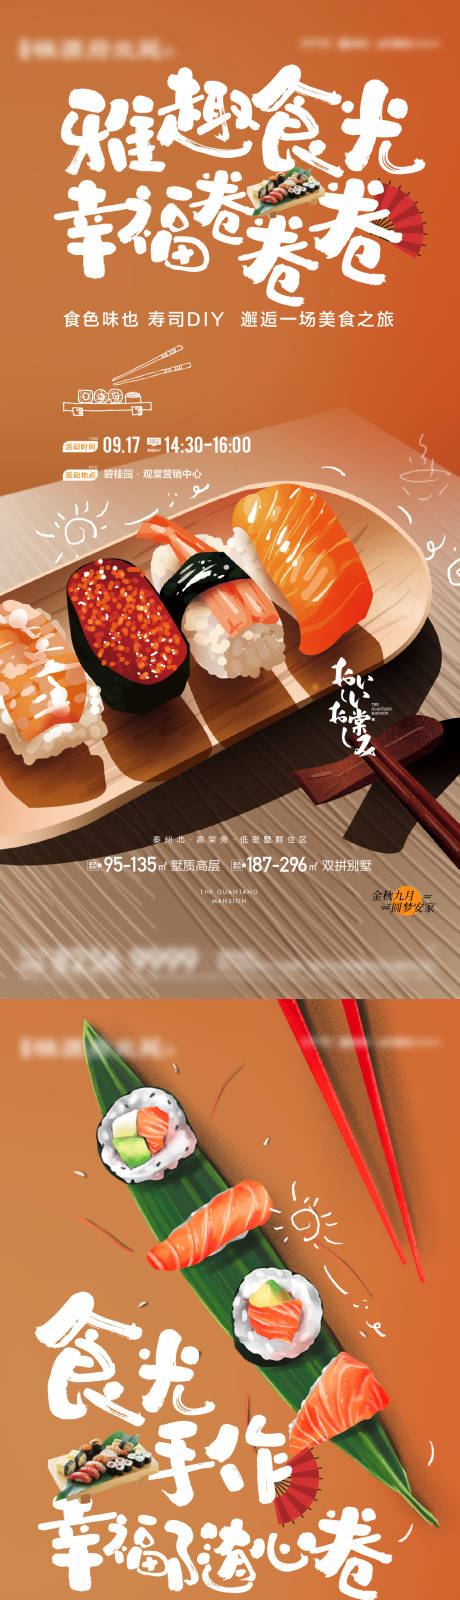 寿司活动海报